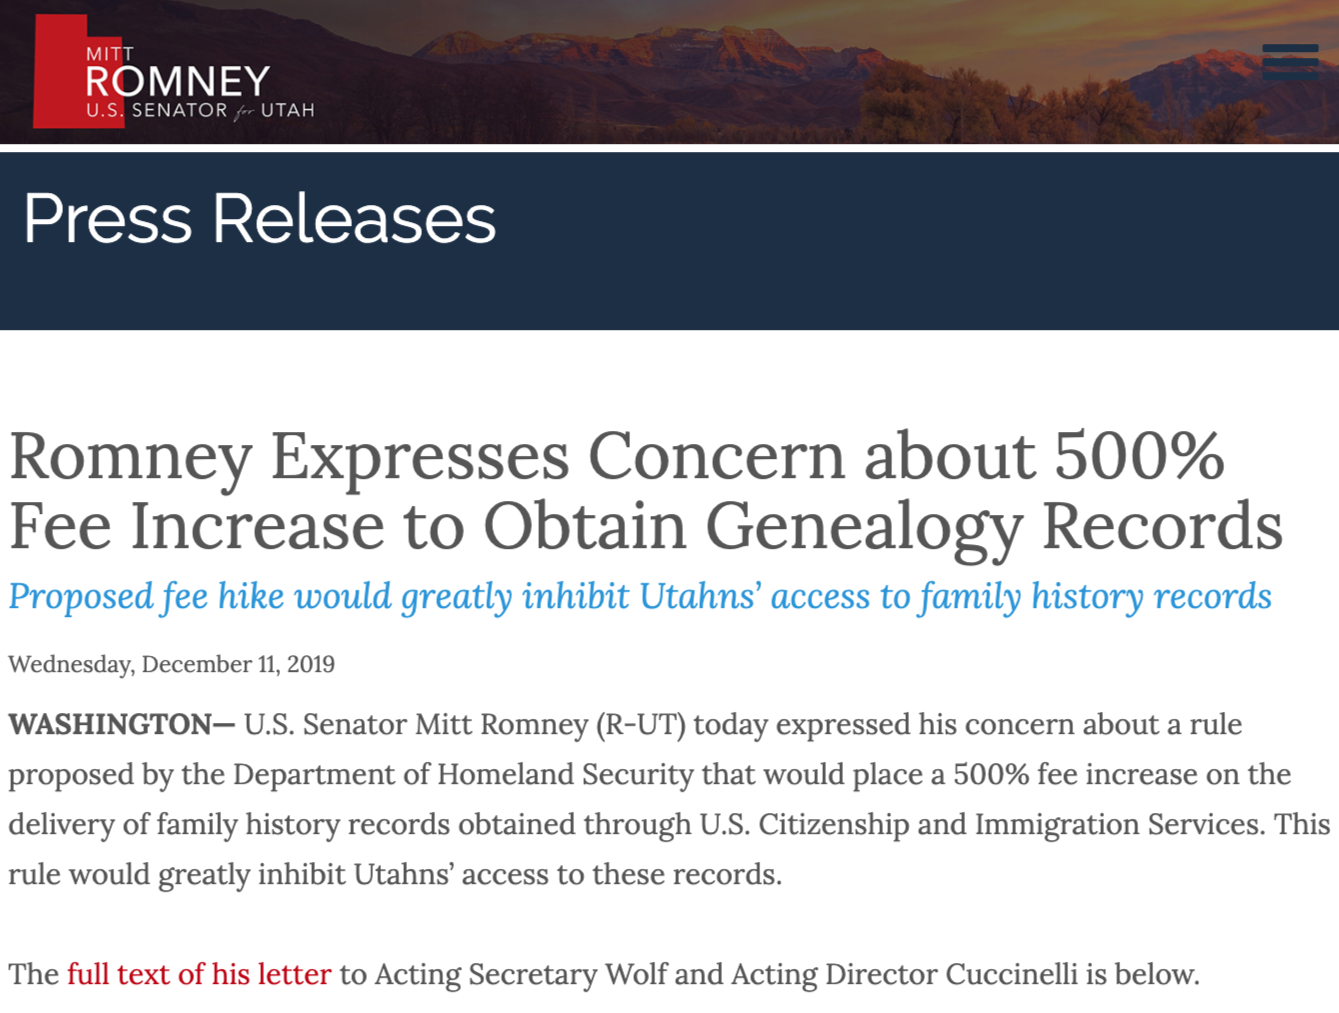 Senator Romney official website